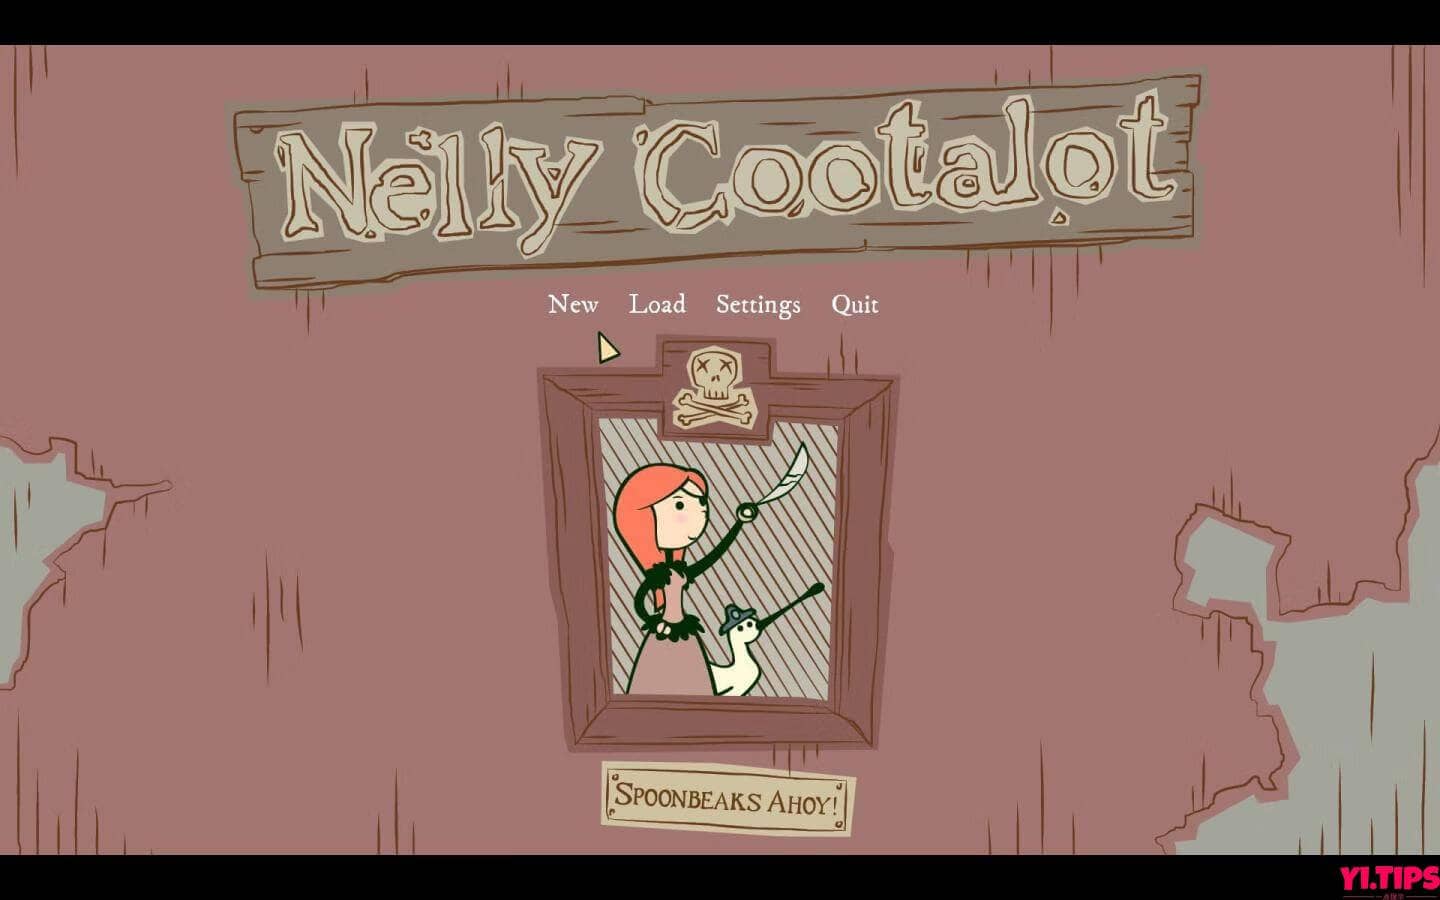 奈丽库塔洛特：鸟兽战队HD Nelly Cootalot: Spoonbeaks Ahoy! HD For Mac V0.91 英文原生版-Mac游戏免费下载 - Yi.Tips-Yi.Tips